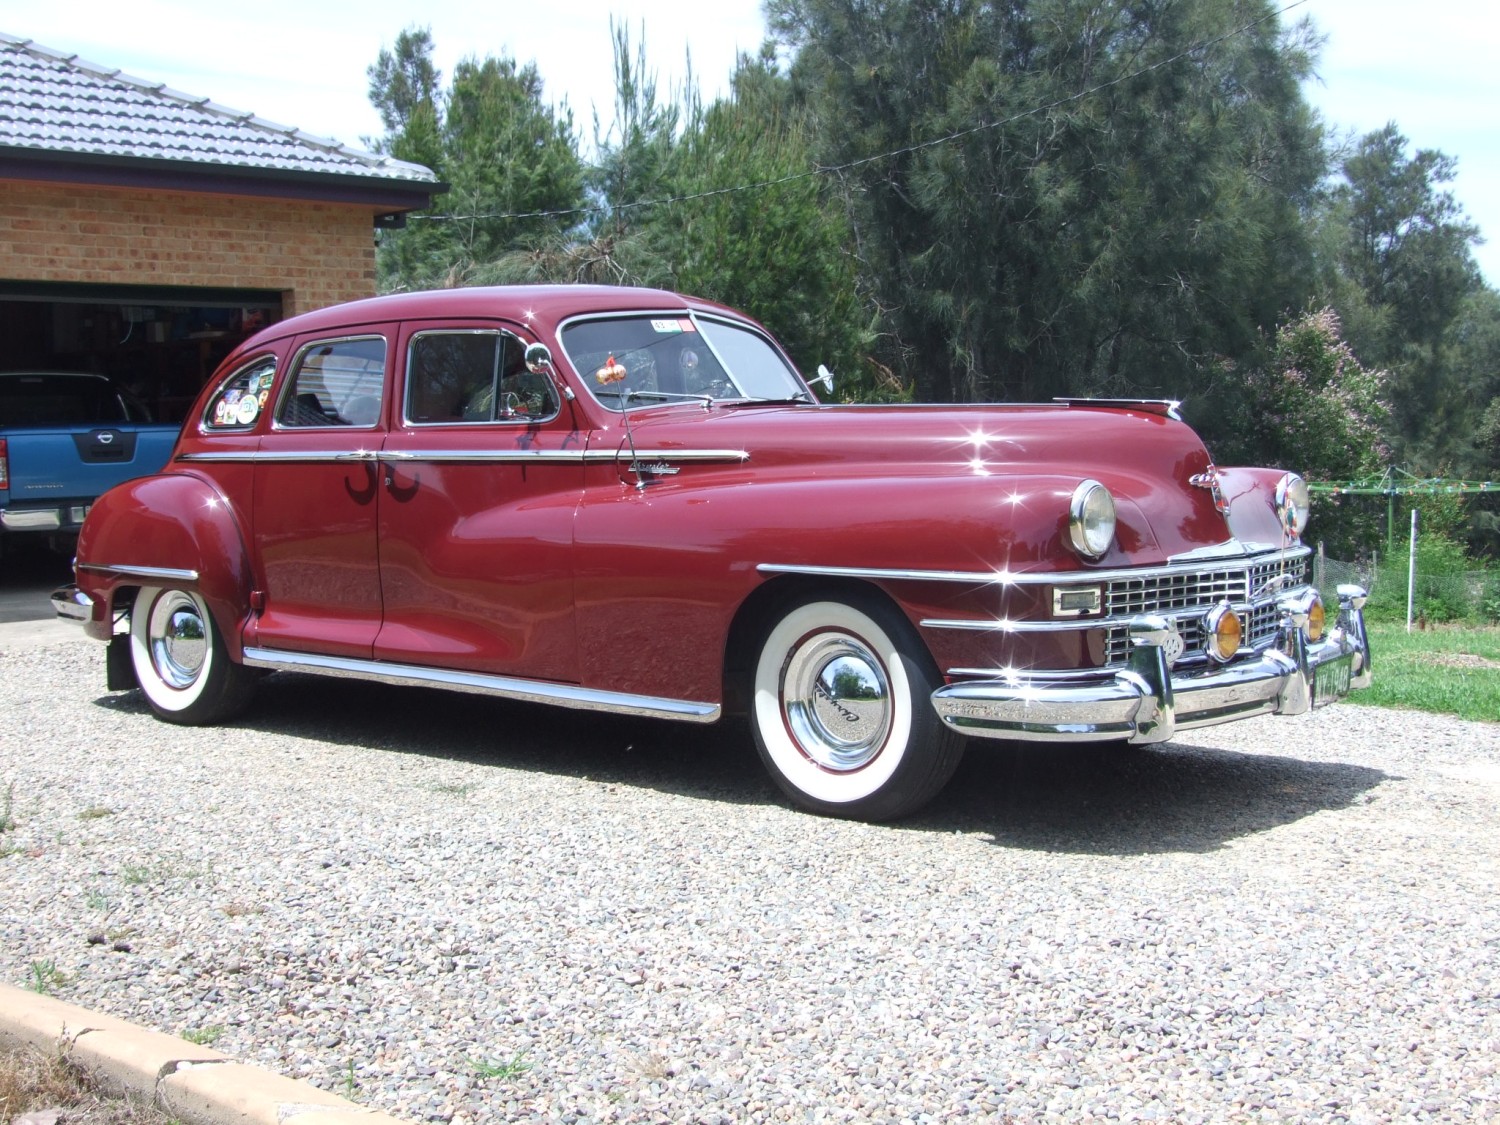 1948 Chrysler New Yorker - Oldchrysler - Shannons Club